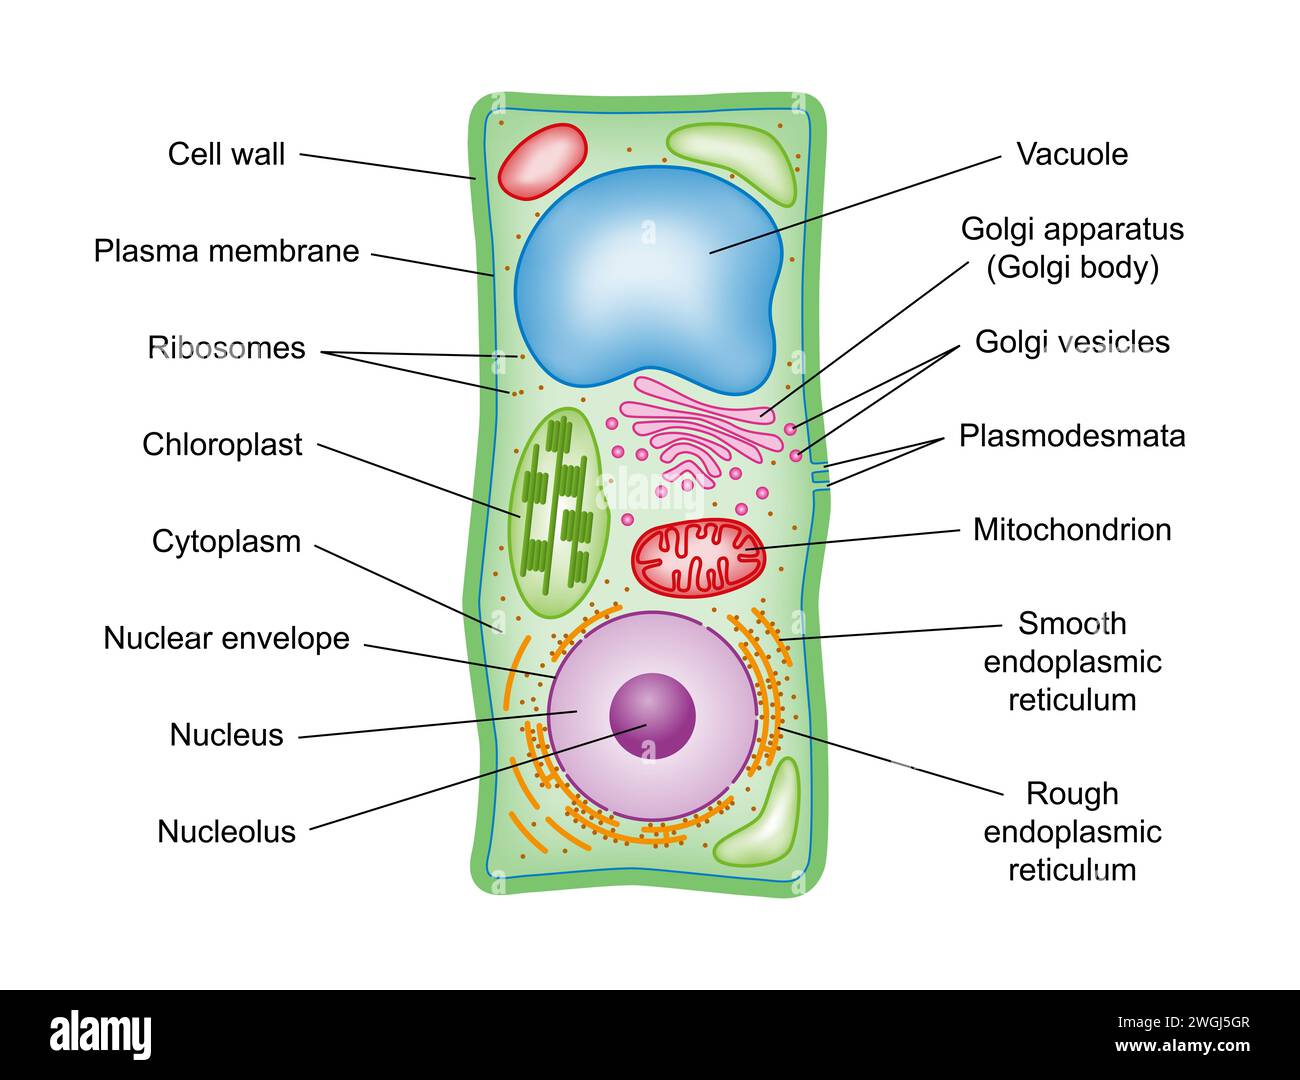 Pflanzenzellenstruktur, Querschnitt, mit Legende. Schematische Darstellung der Bestandteile von Pflanzenzellen, photosynthetische Eukaryoten, mit technischen Begriffen. Stockfoto